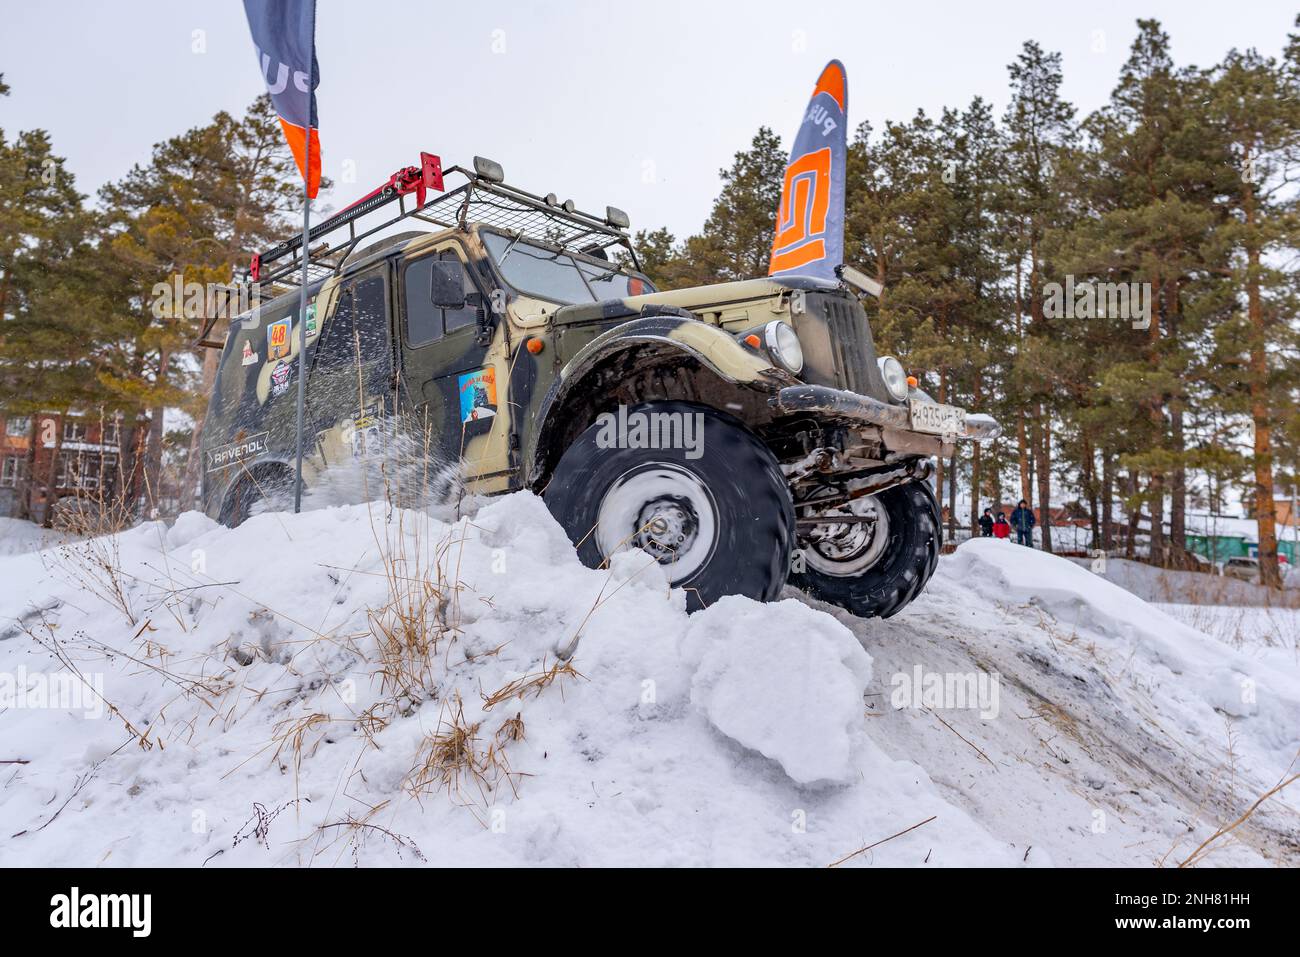 El viejo SUV todoterreno ruso 'gaz69 4x4' va rápidamente levantando nieve en invierno en una colina con banderas de la meta. Foto de stock